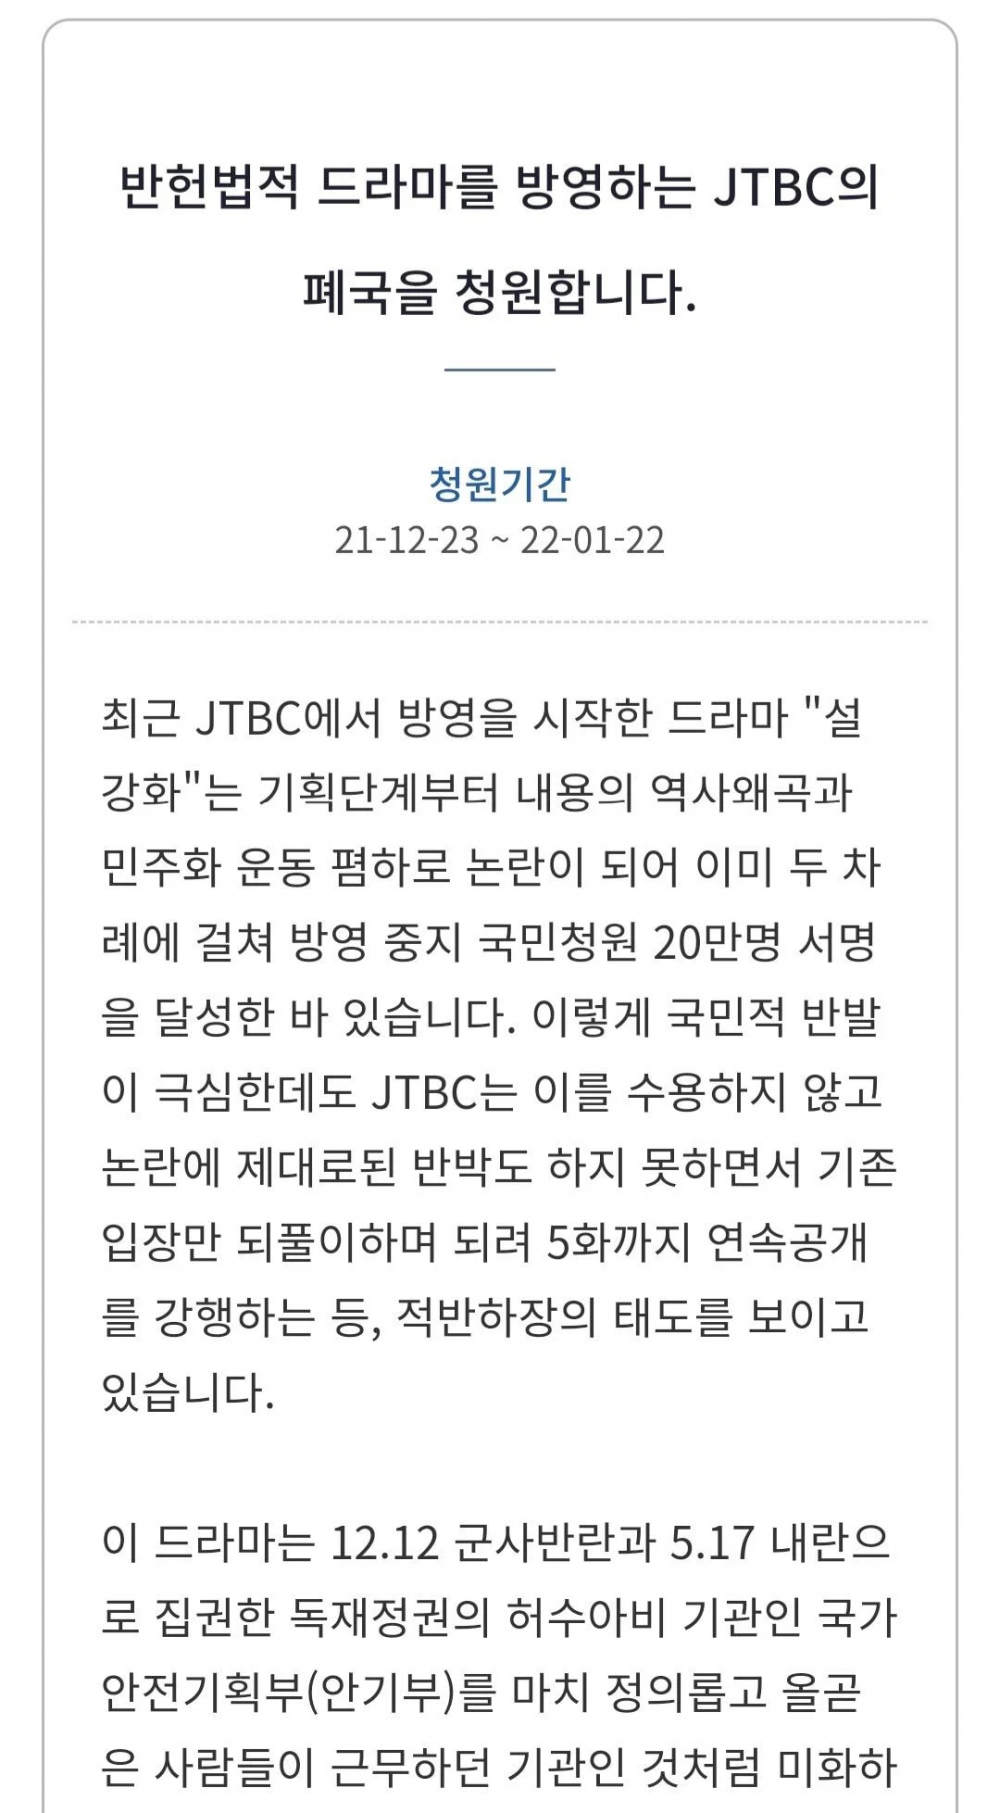 Căng thẳng leo thang, netizen đòi đóng luôn JTBC vì tranh cãi 'Snowdrop'